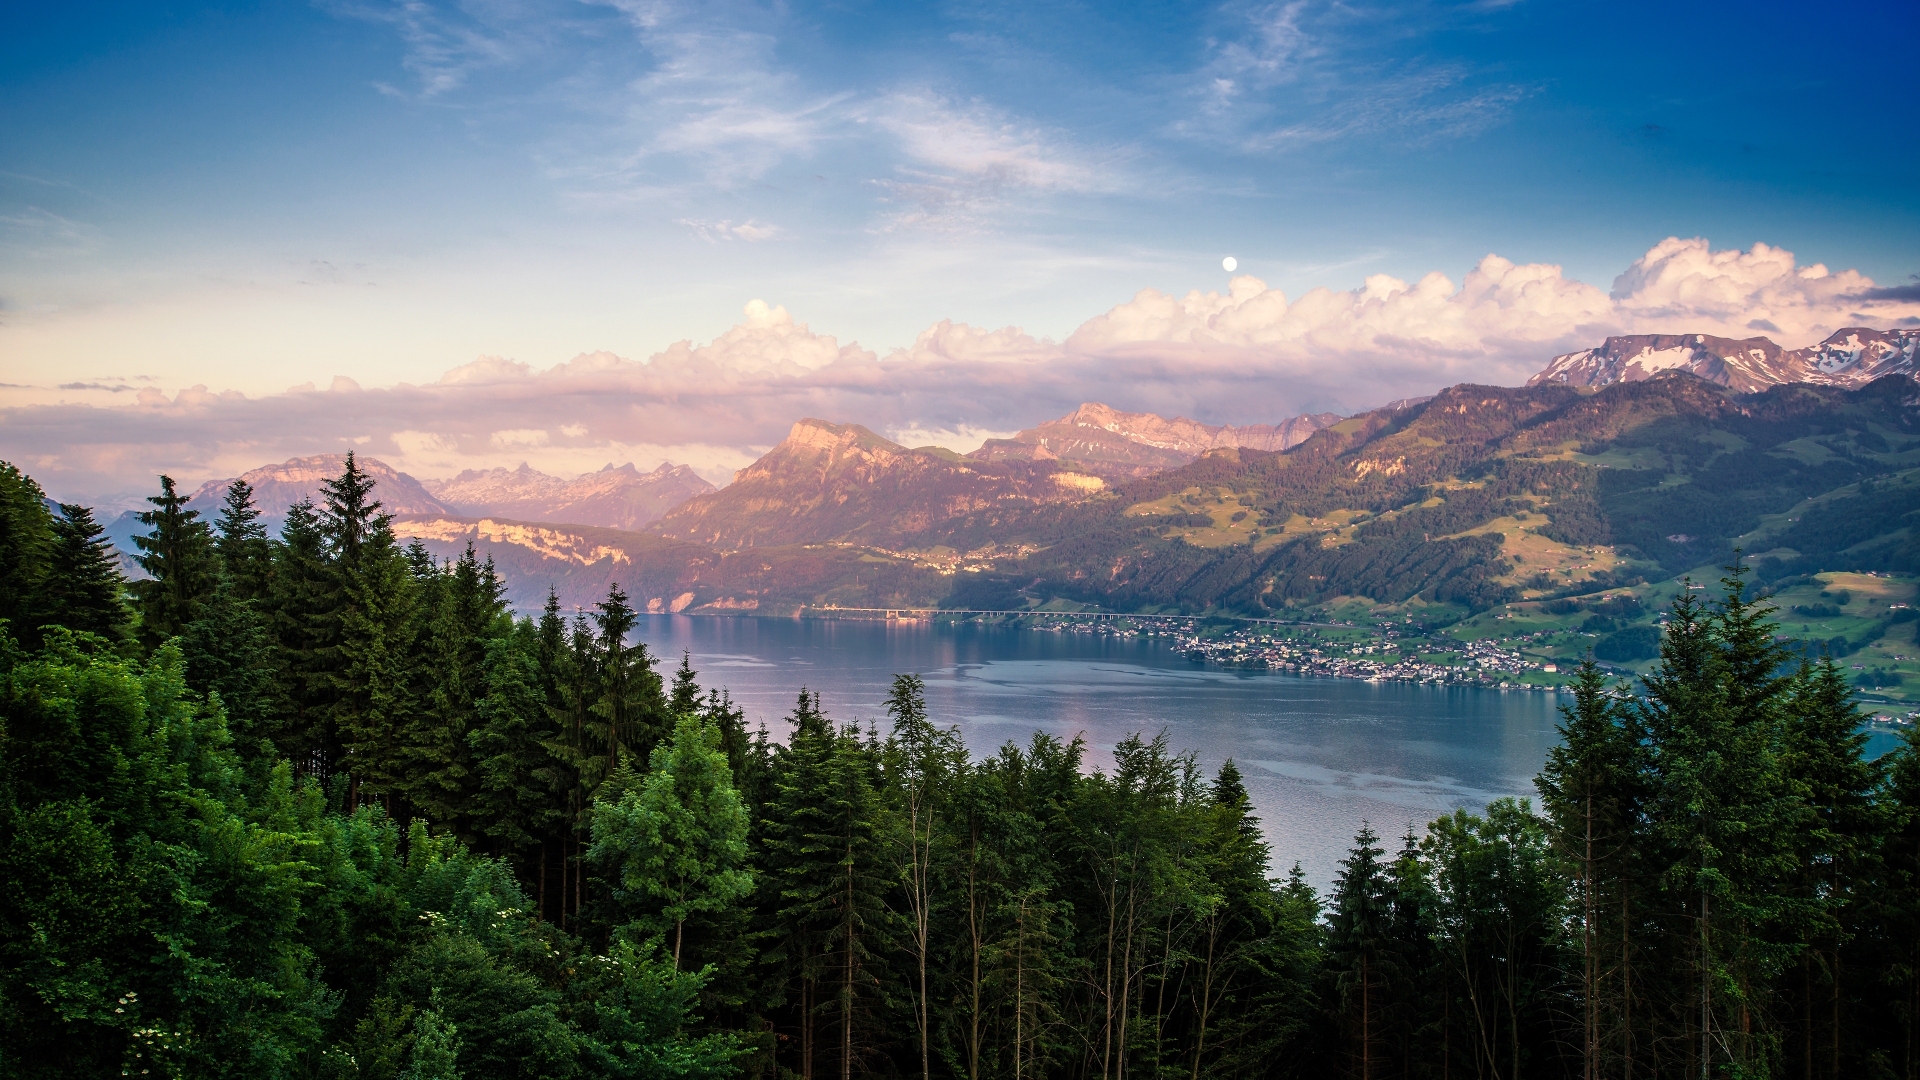 Lake Zurich Landscape for 1920 x 1080 HDTV 1080p resolution